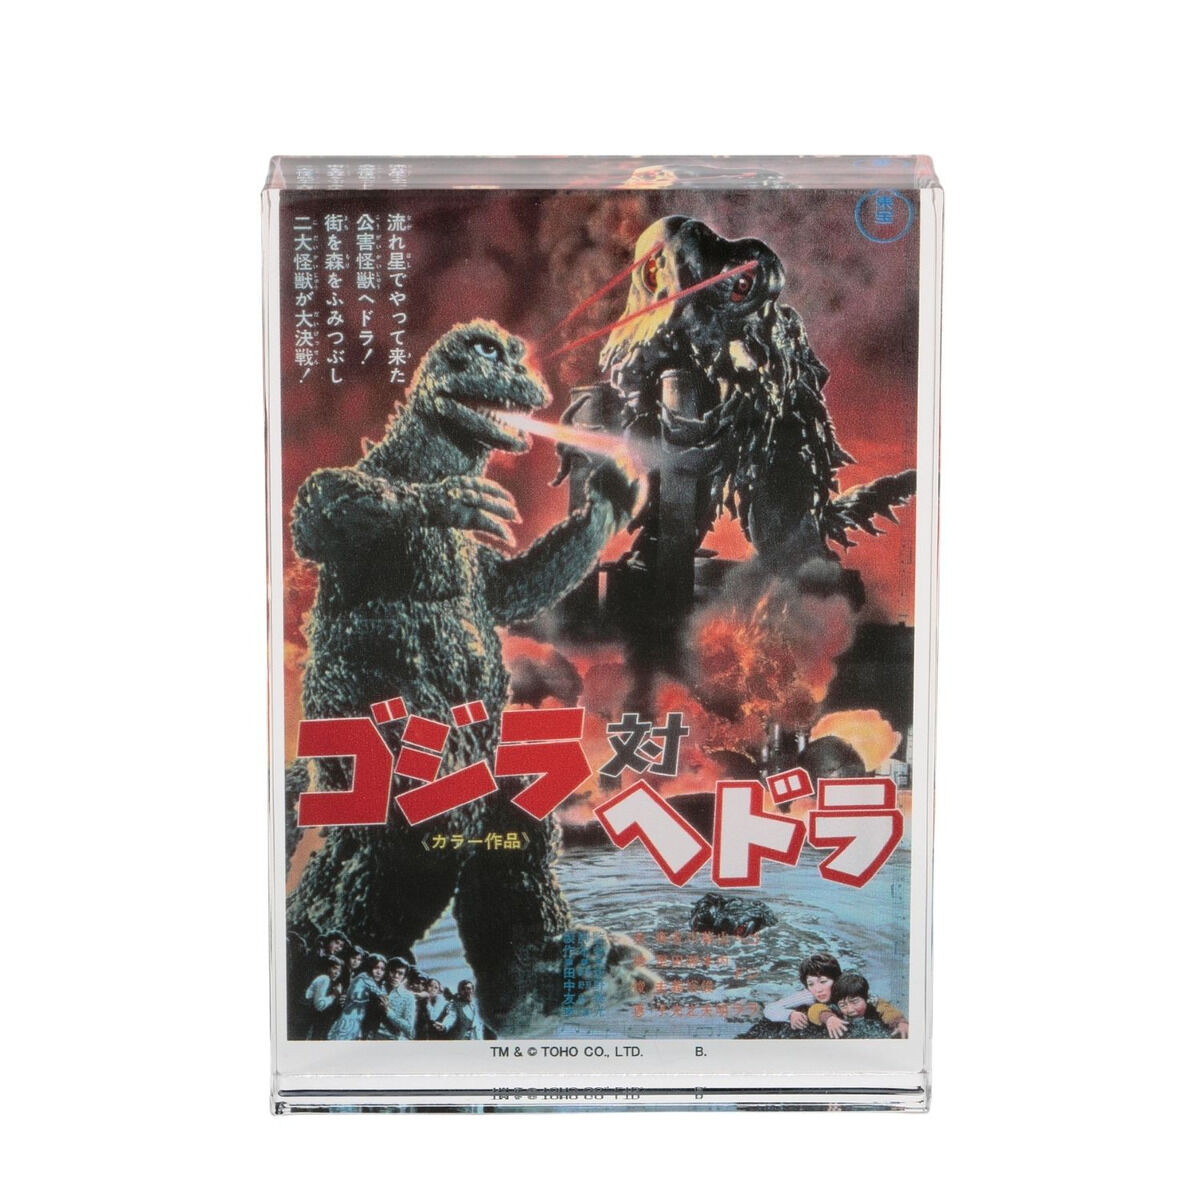 Original Godzilla Gashapon Japan Store Tokyo Aleatory prize 4 models TOHO 